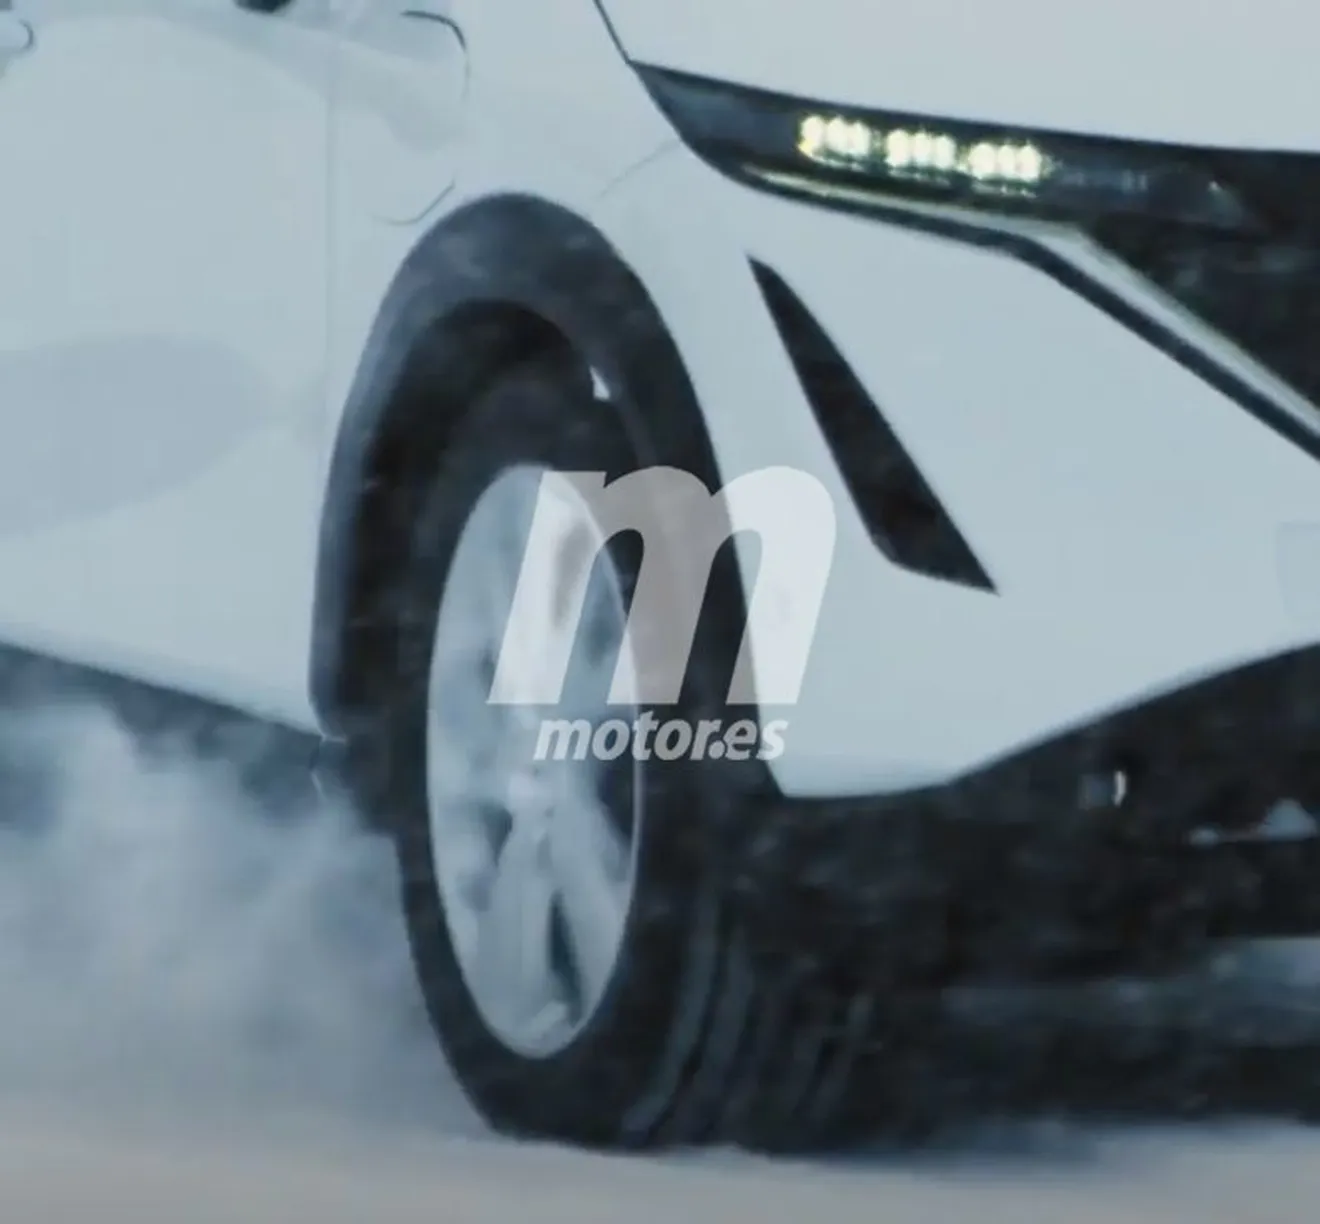 El Nissan Ariya se filtra parcialmente en un nuevo teaser previo al debut mundial